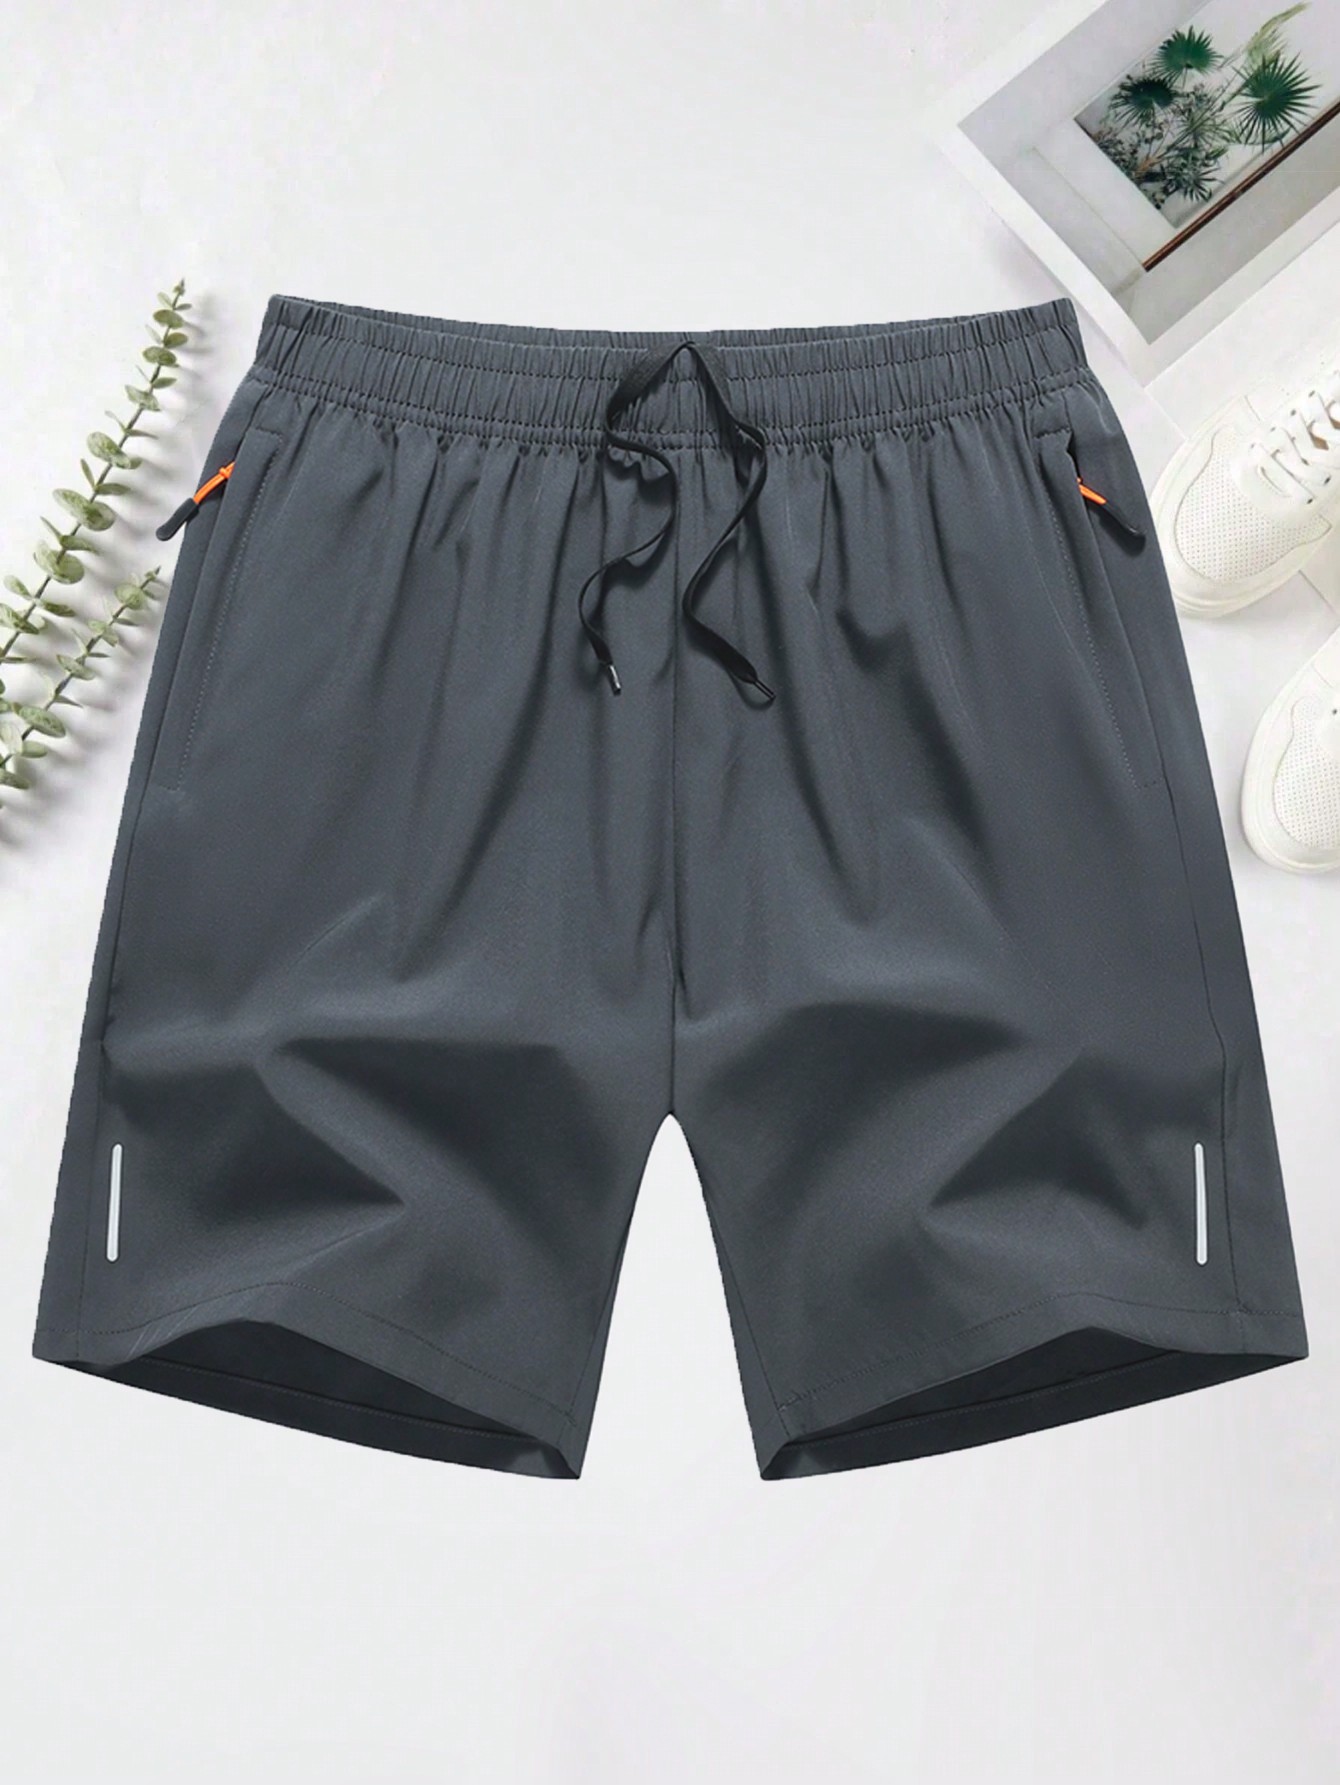 Мужские повседневные спортивные шорты с эластичной резинкой на талии, светло-серый шорты мужские эйс серые размер 48